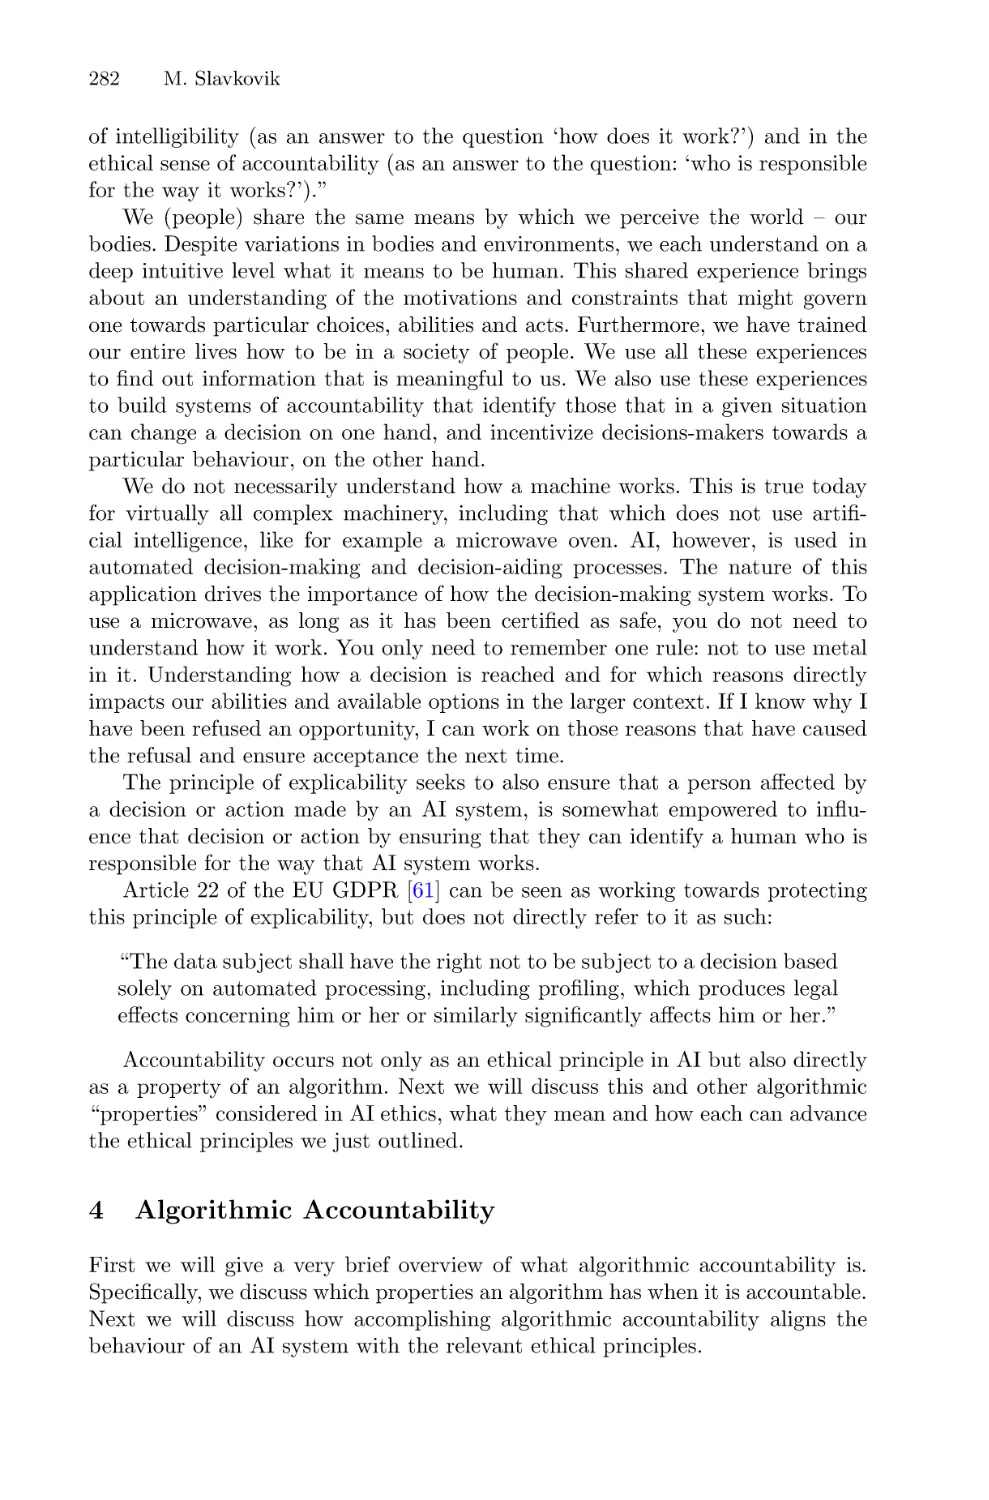 4 Algorithmic Accountability